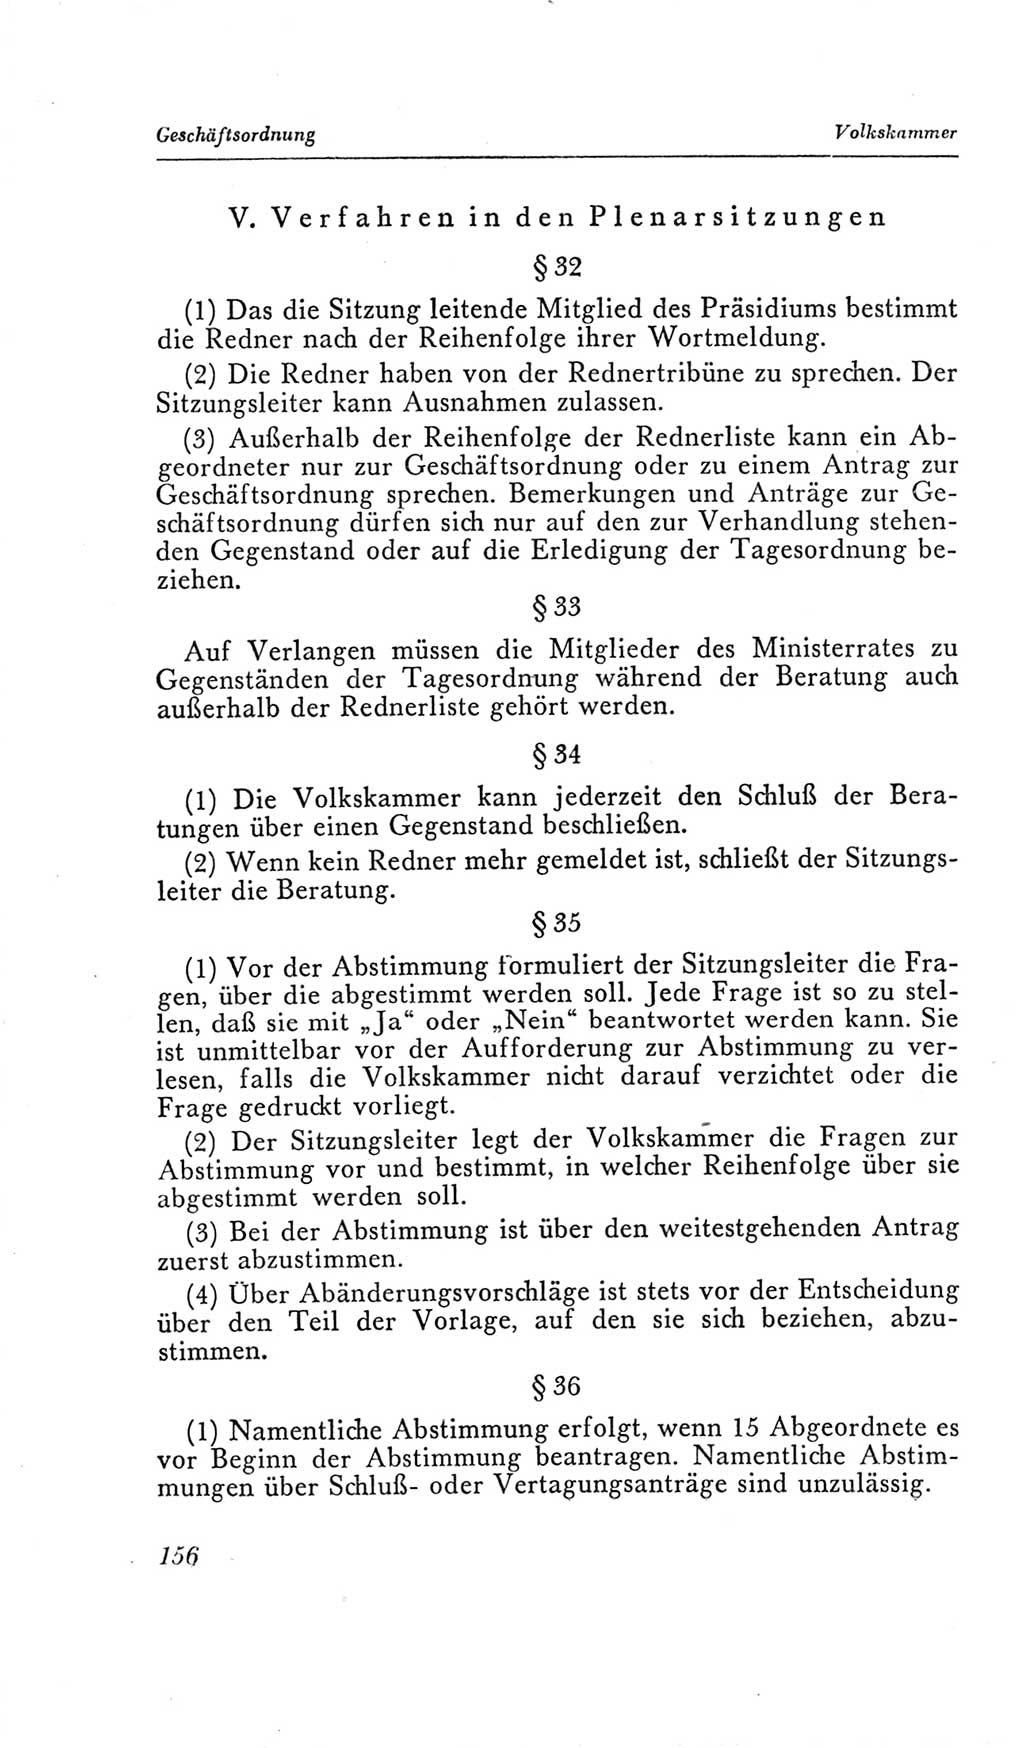 Handbuch der Volkskammer (VK) der Deutschen Demokratischen Republik (DDR), 2. Wahlperiode 1954-1958, Seite 156 (Hdb. VK. DDR, 2. WP. 1954-1958, S. 156)